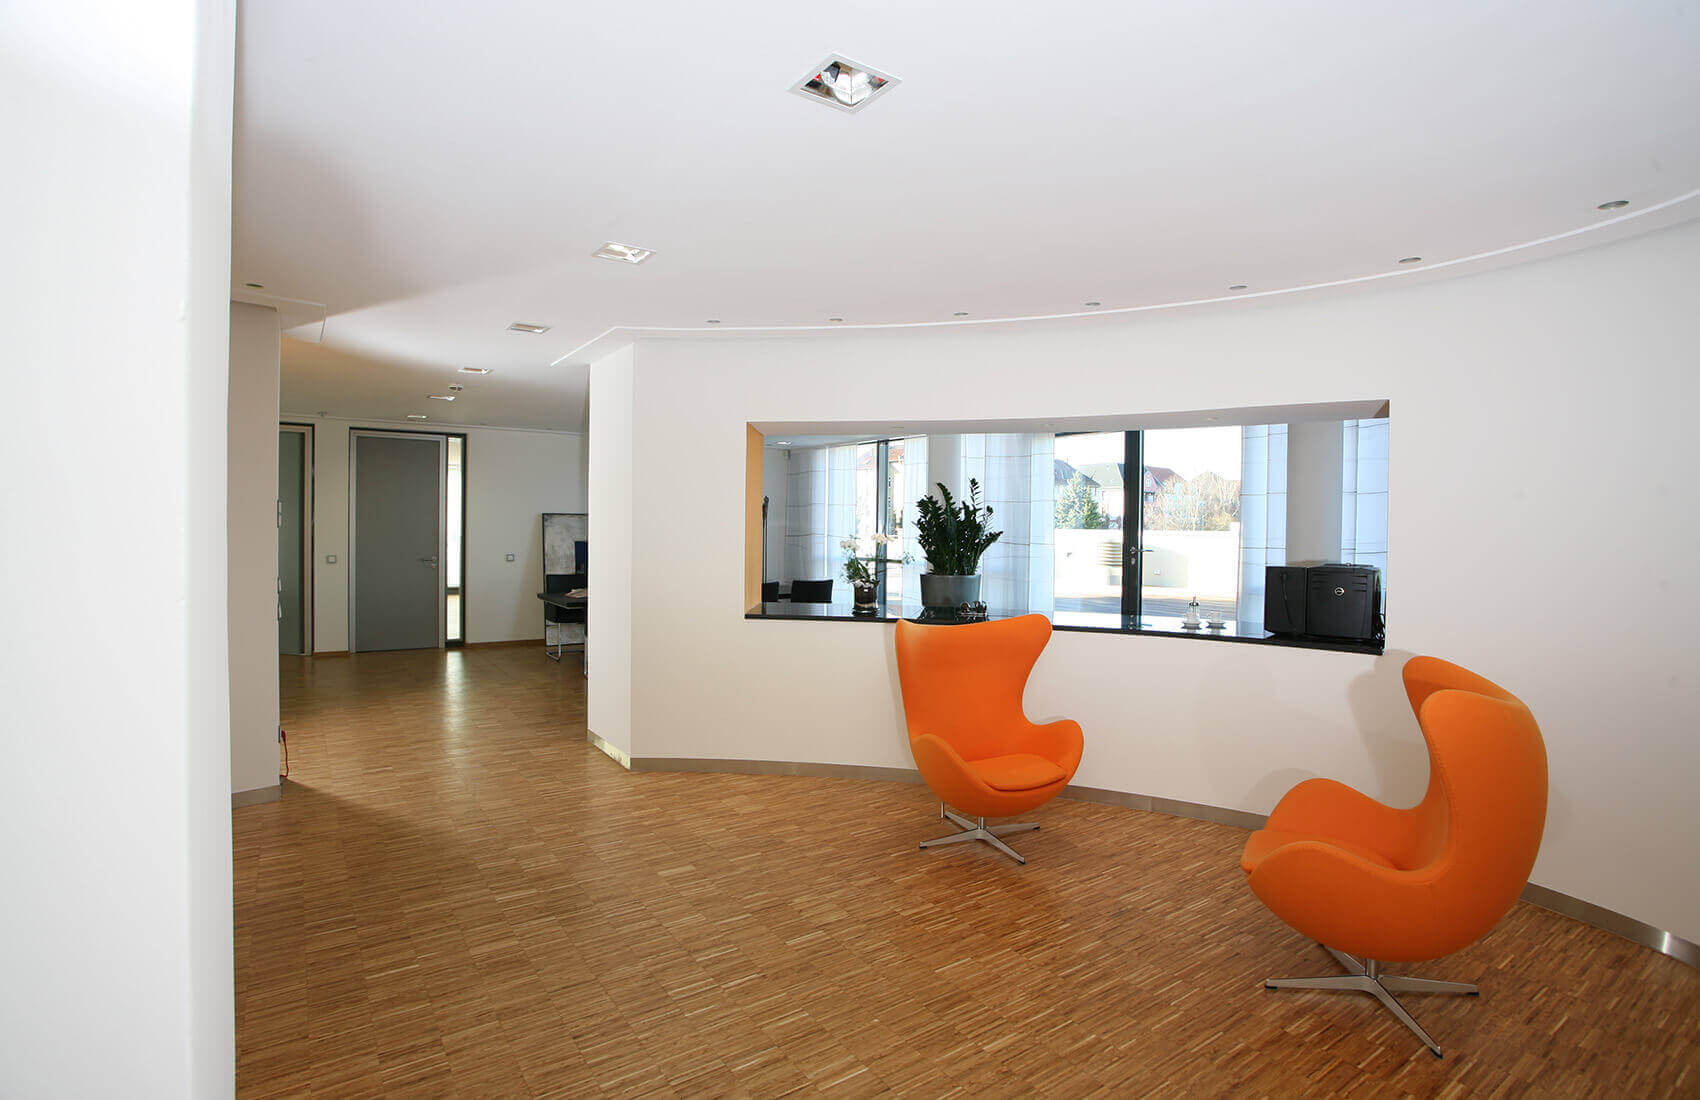 Sitzbereich in einem Bürogebäude | Büroarchitektur Innenarchitektur